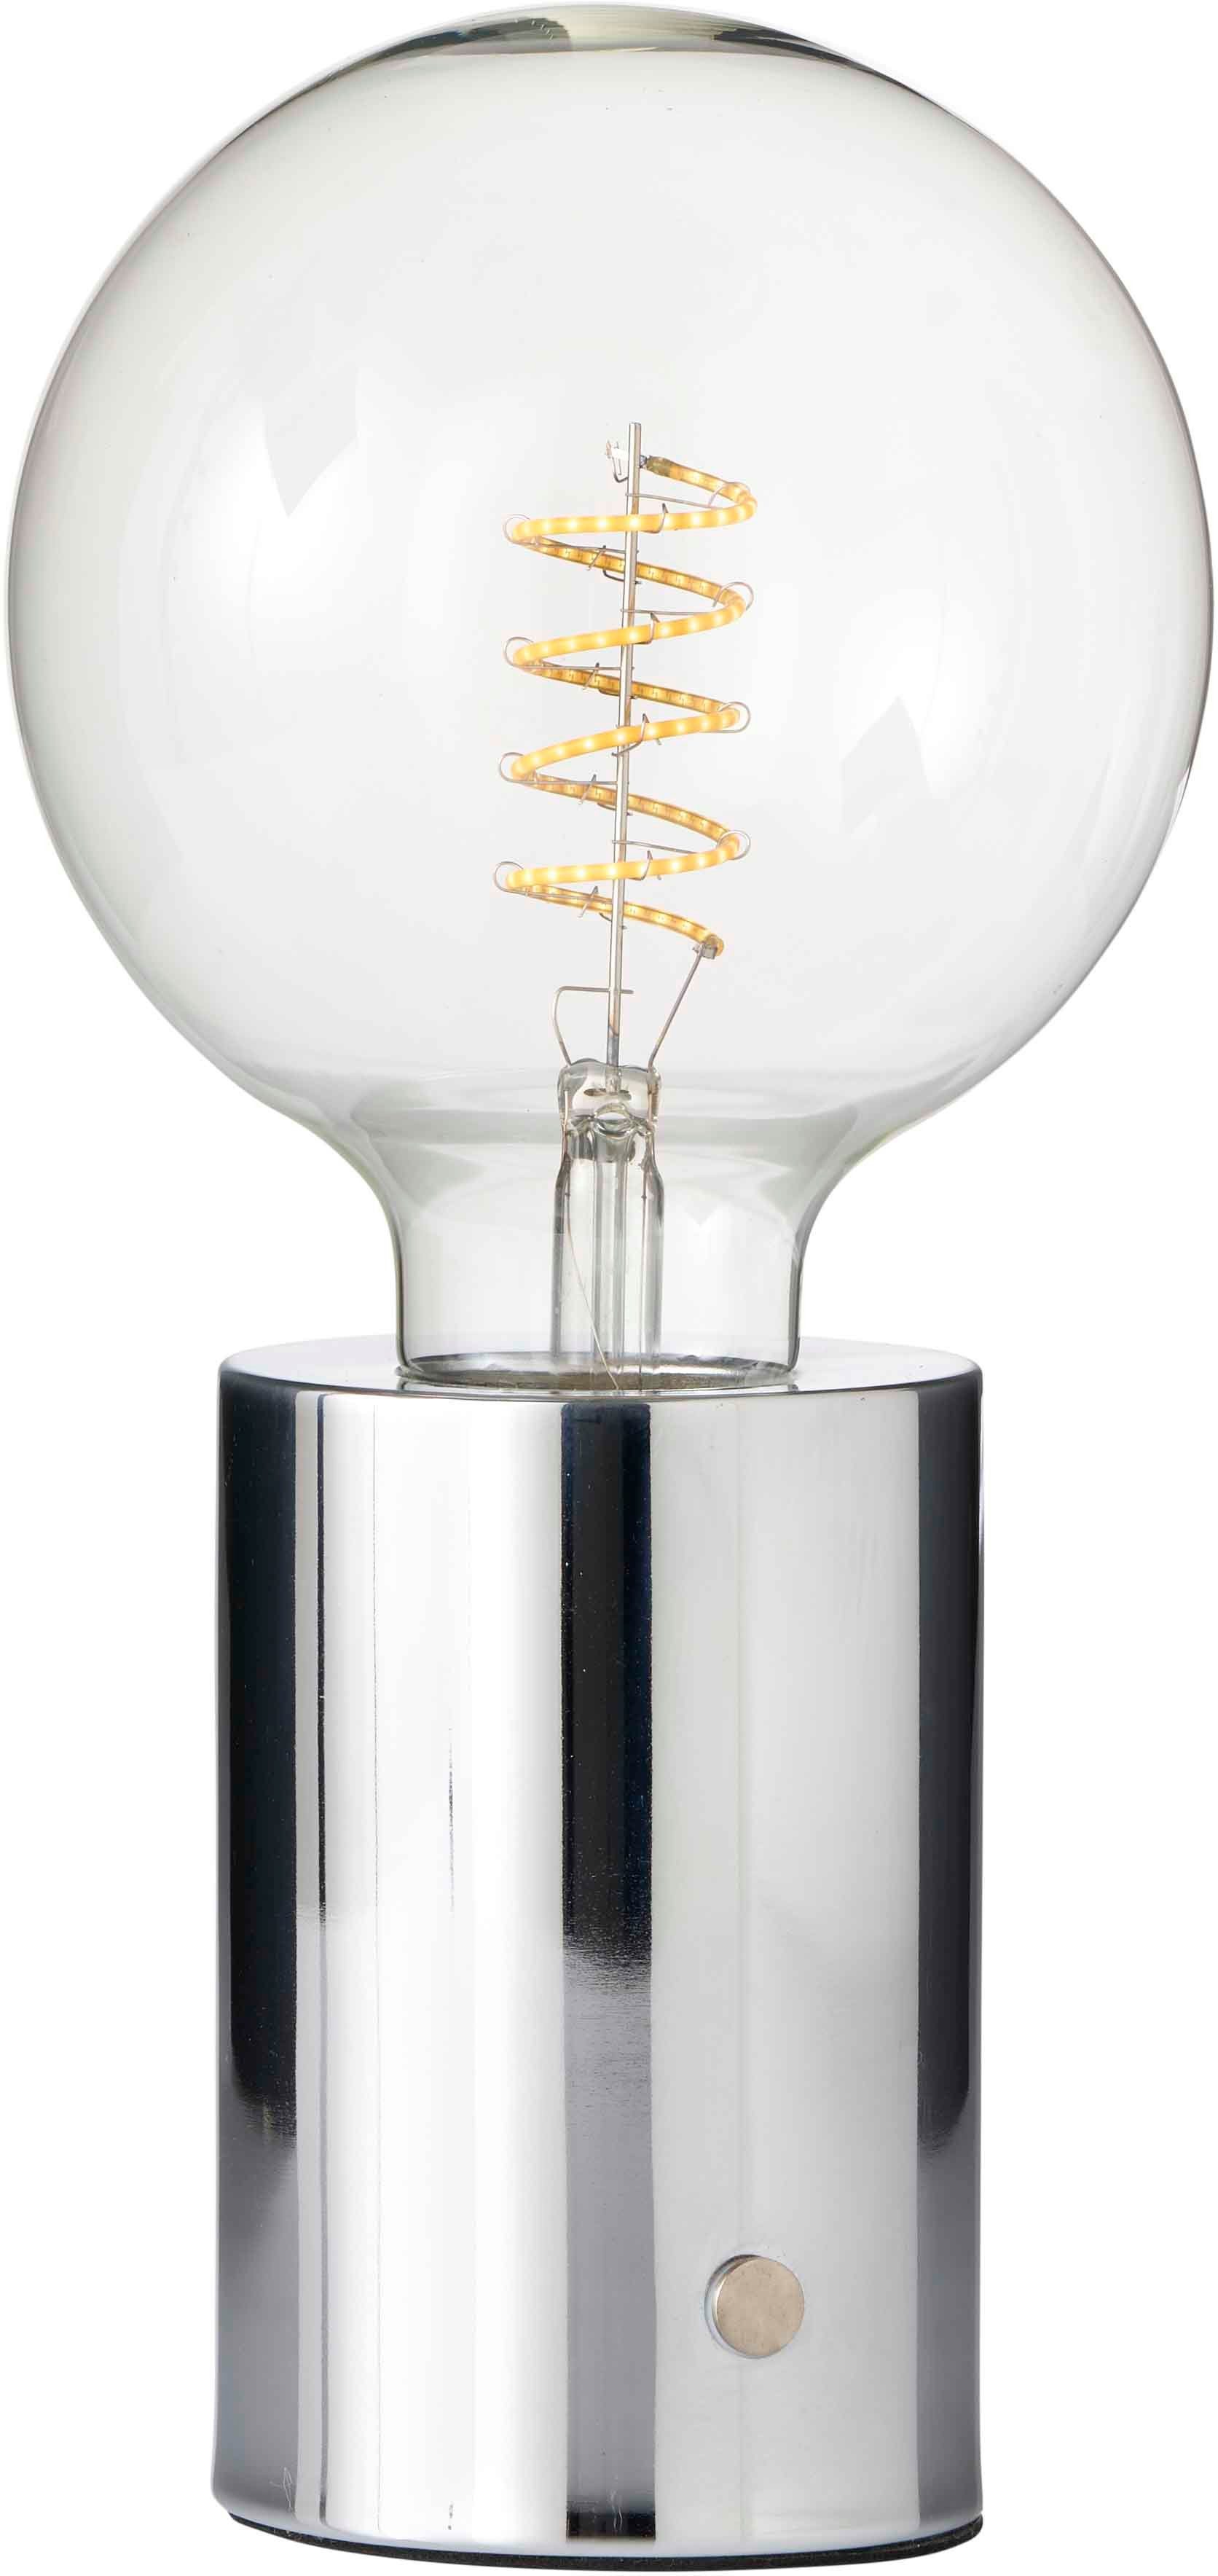 Northpoint Nachttischlampe LED Akku Tischlampe Tischleuchte Edison Glühbirne mit Glühdraht